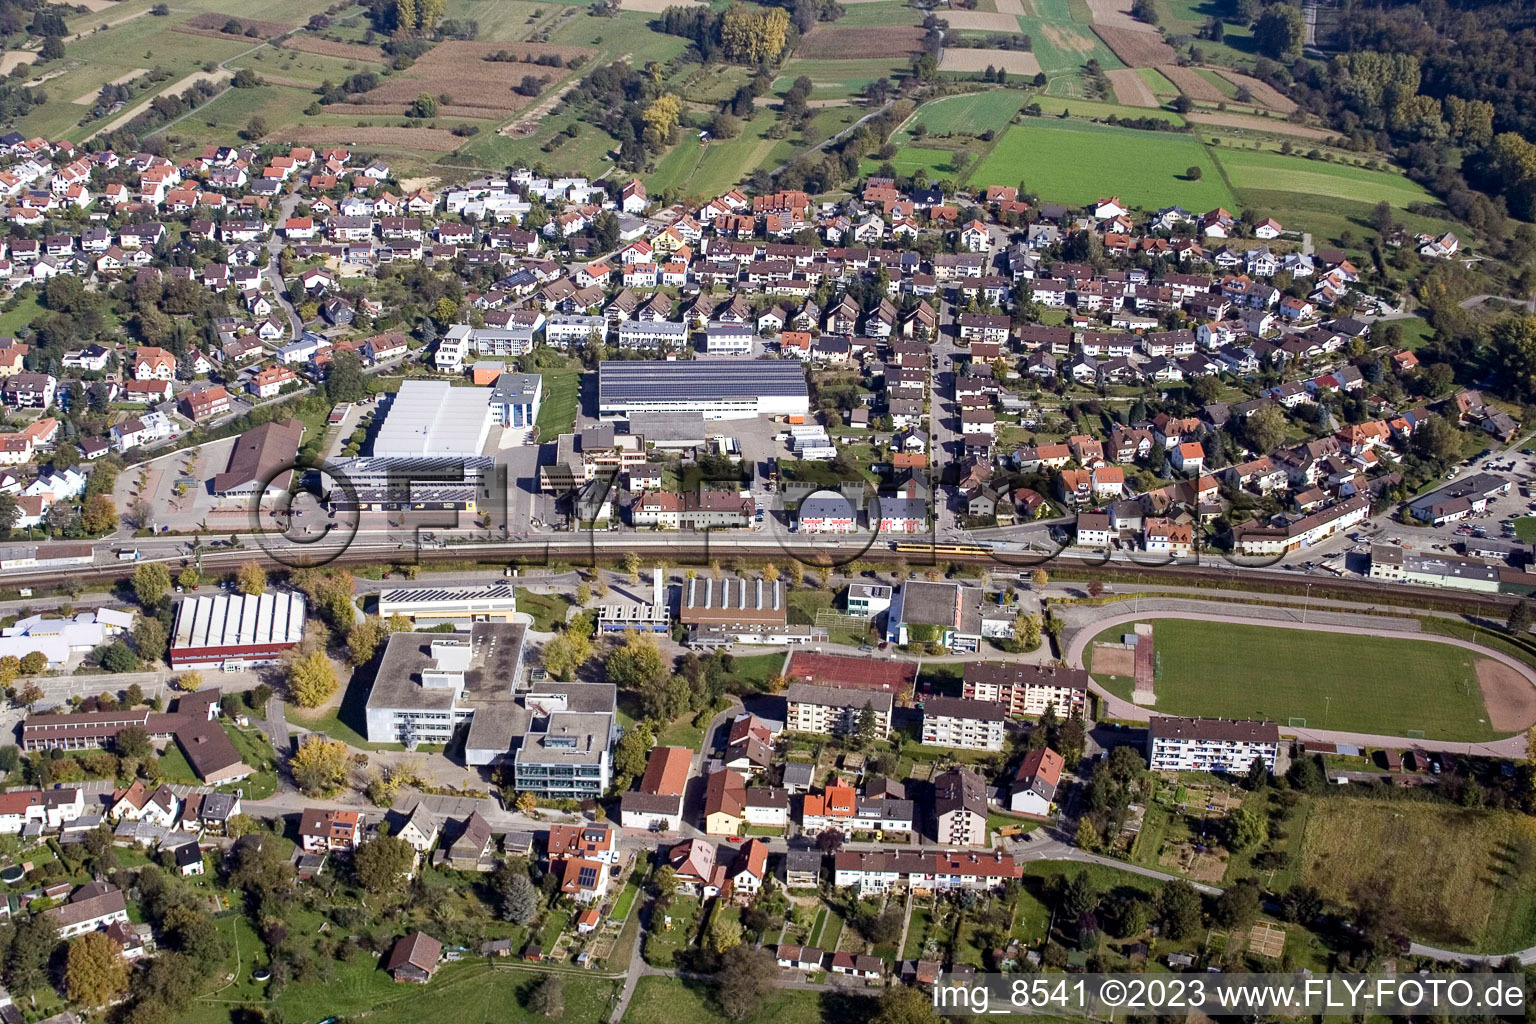 Ludwig-Marum-Gymnasium Pfinztal à le quartier Berghausen in Pfinztal dans le département Bade-Wurtemberg, Allemagne du point de vue du drone